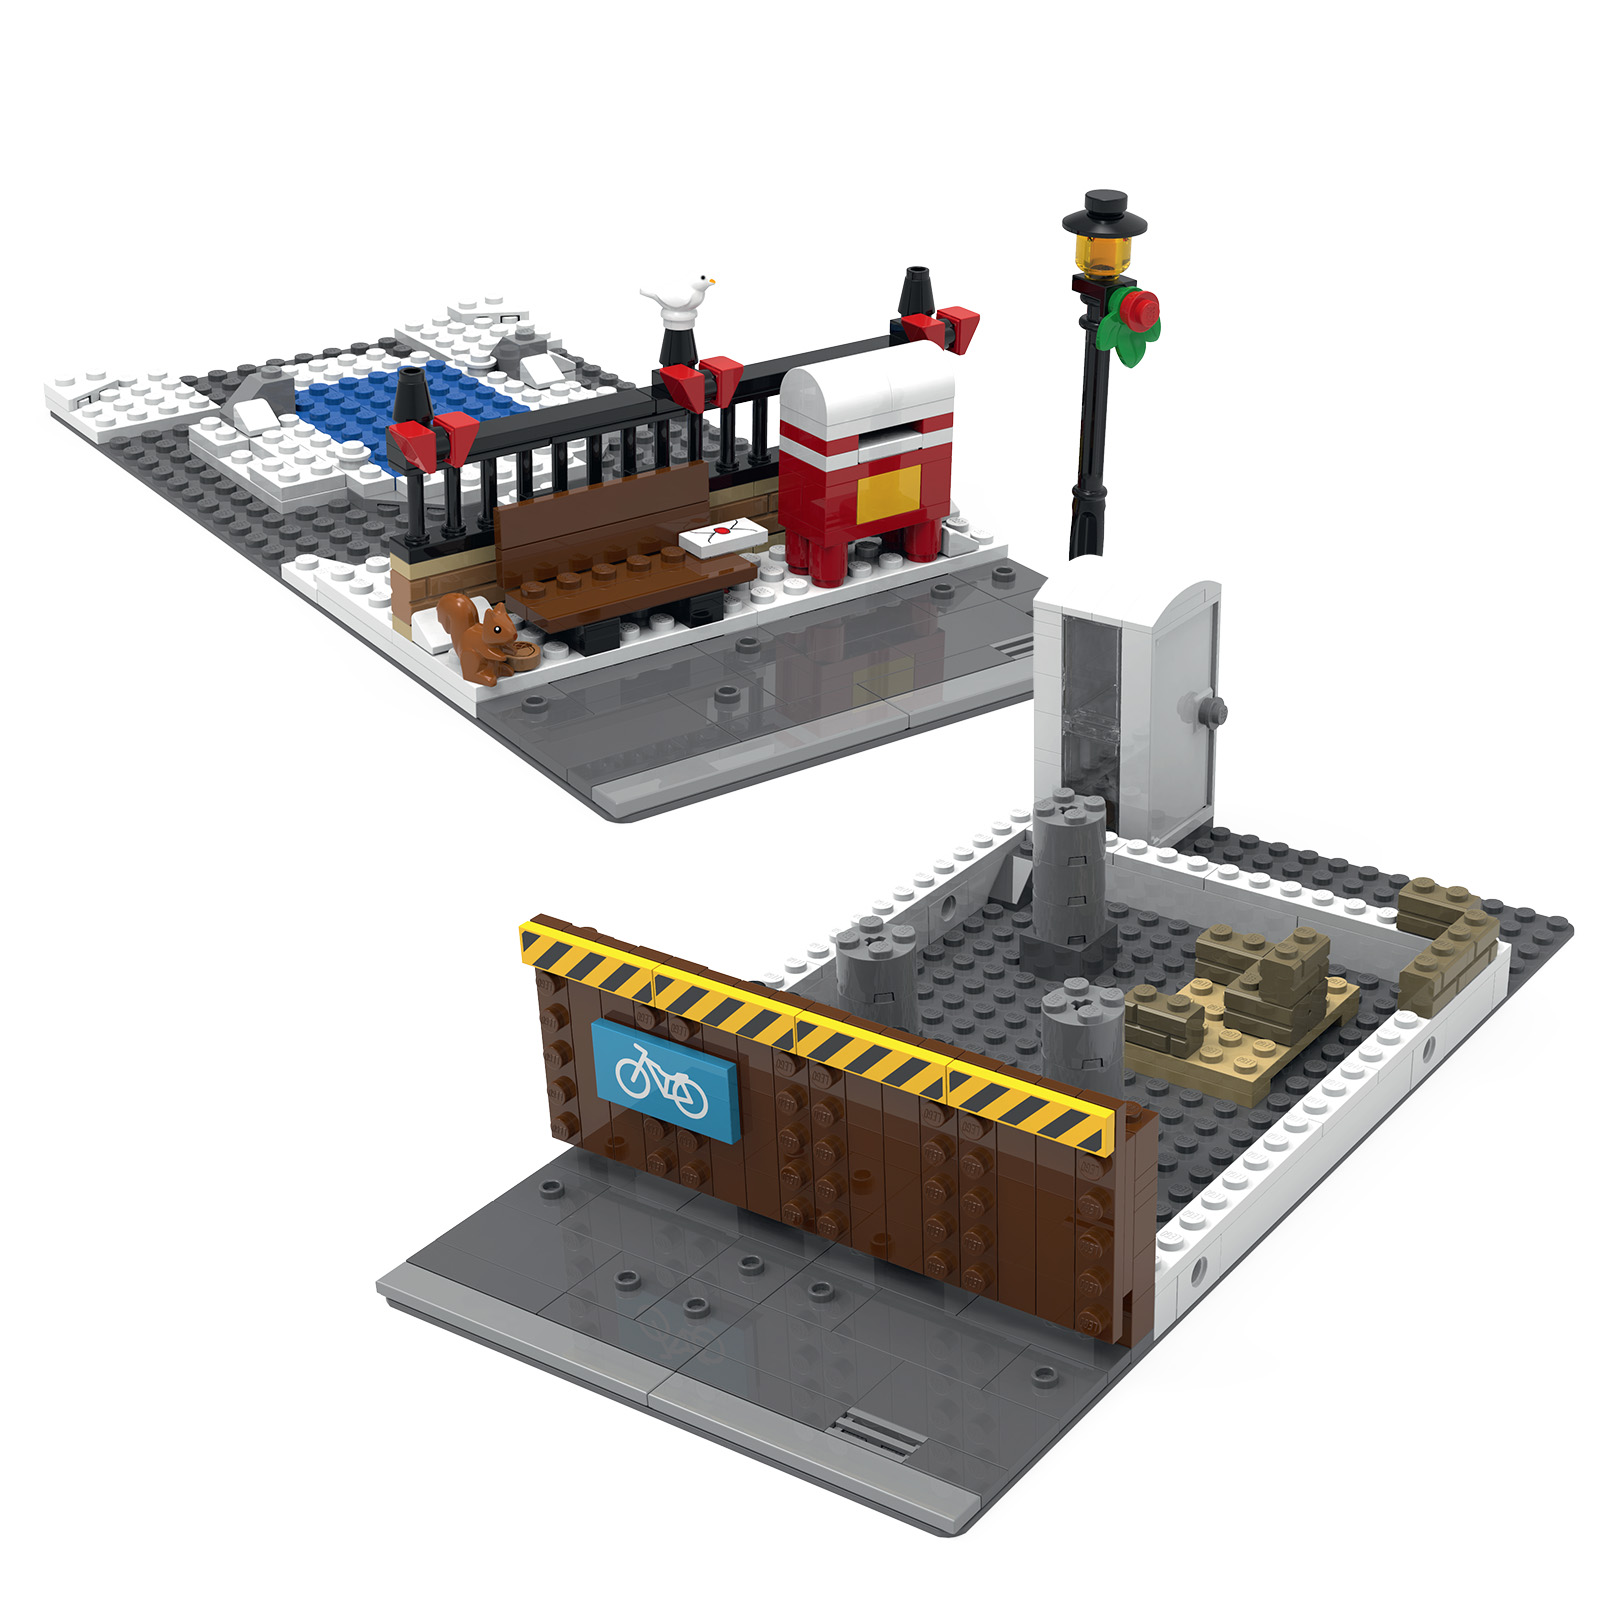 Hoth Bricks on X: Nouveautés LEGO CITY 2021 : fin des plaques de route et  lancement d'un nouveau système modulaire ?: La liste des sets prévus en  2021 dans la gamme LEGO